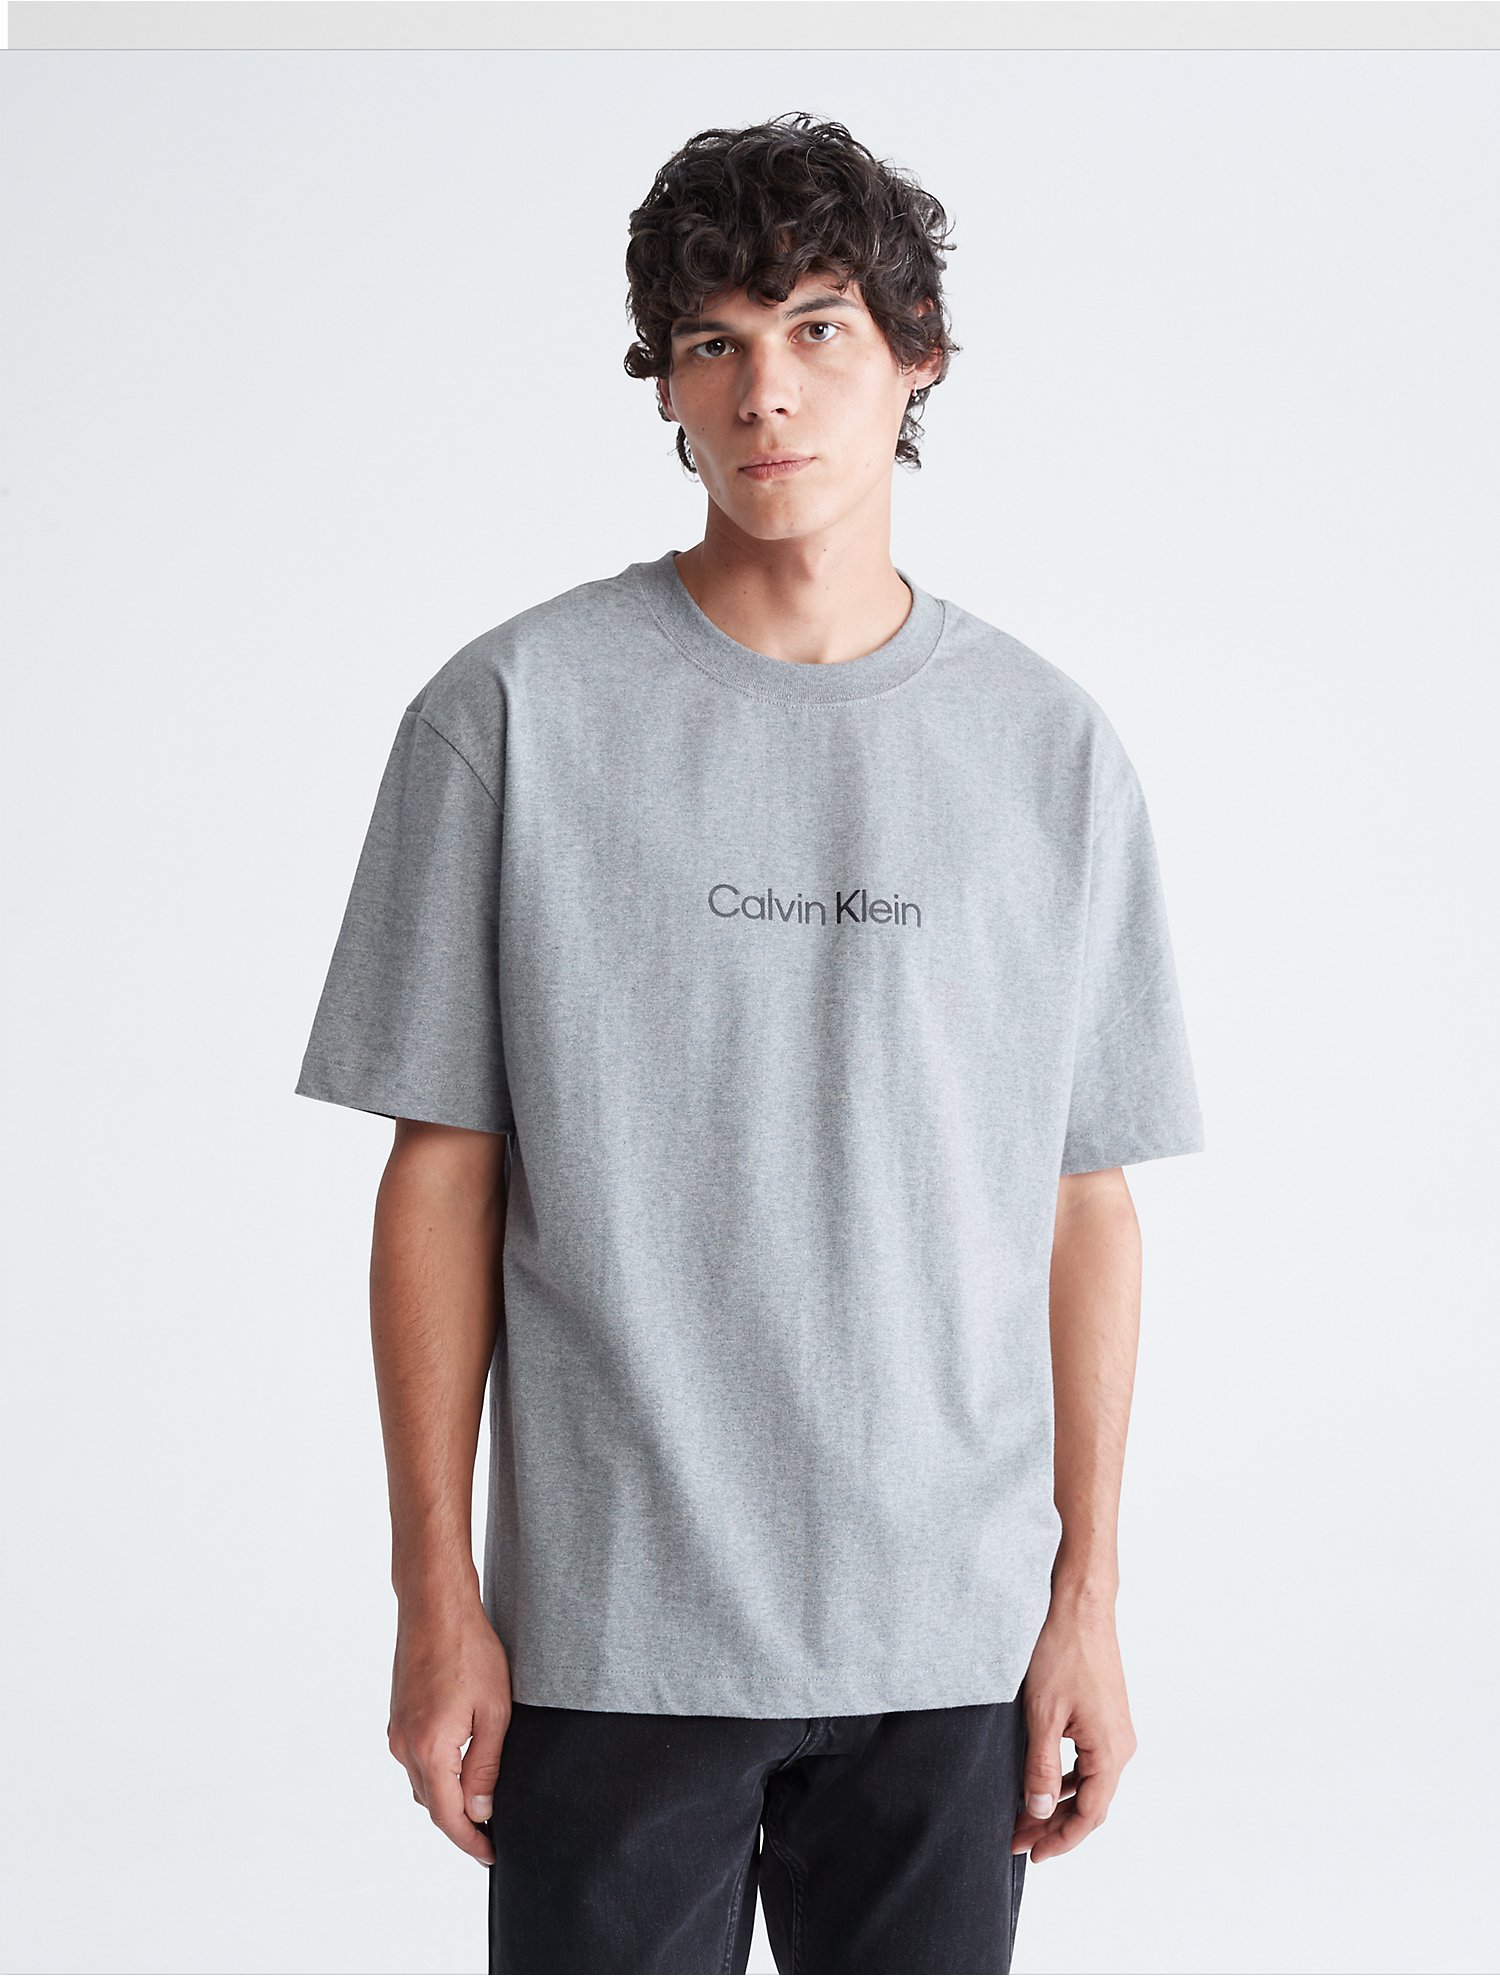 apotheek Pittig gemeenschap Relaxed Fit Standard Logo Crewneck T-Shirt | Calvin Klein